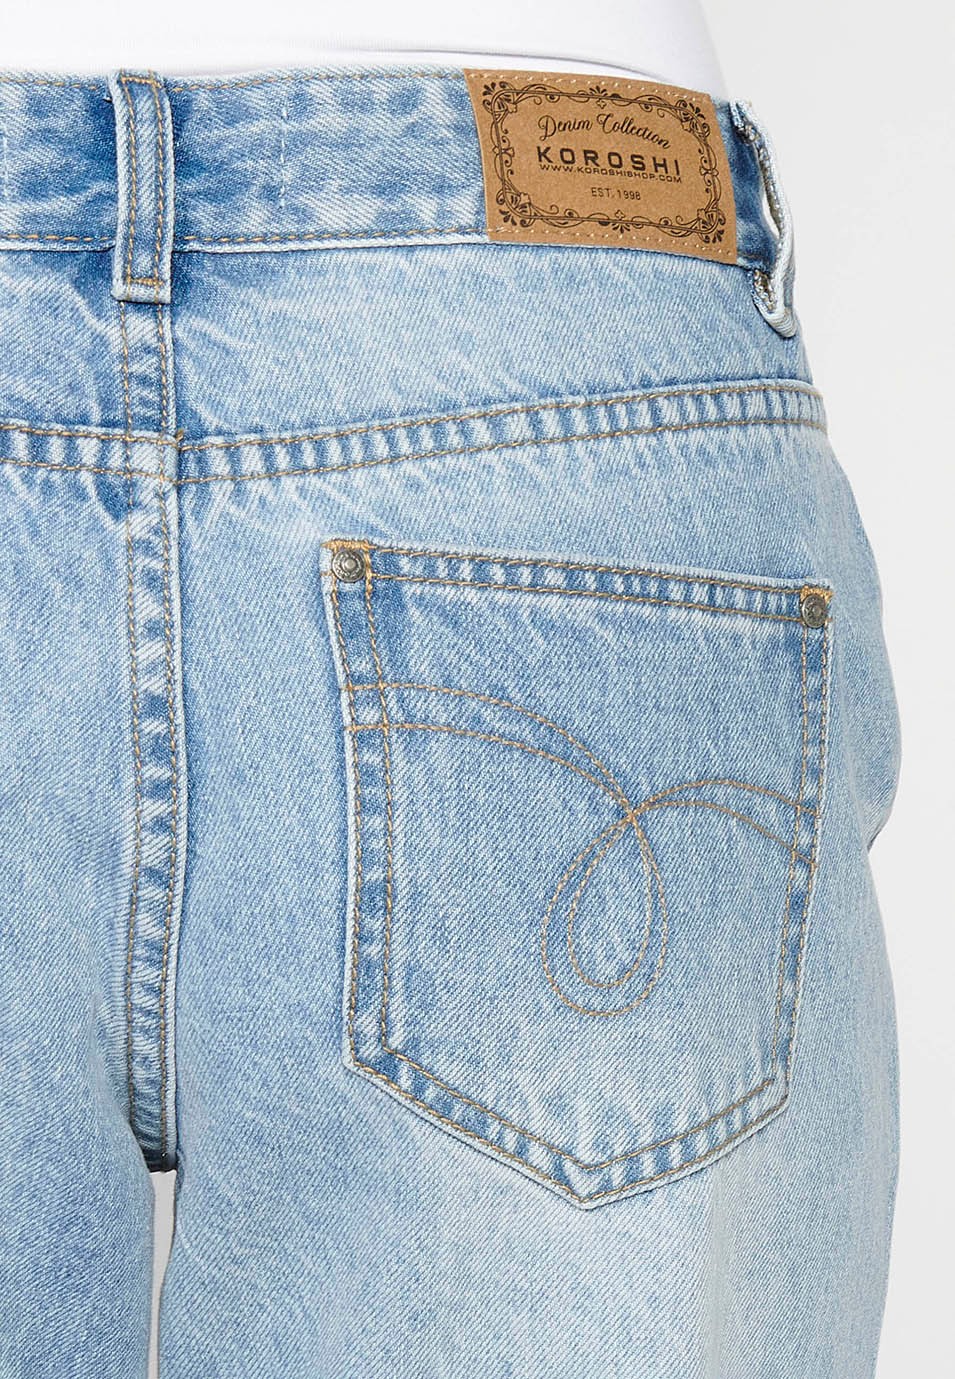 Pantalons llargs rectes amb detalls de trencats davanters color blau per a dona